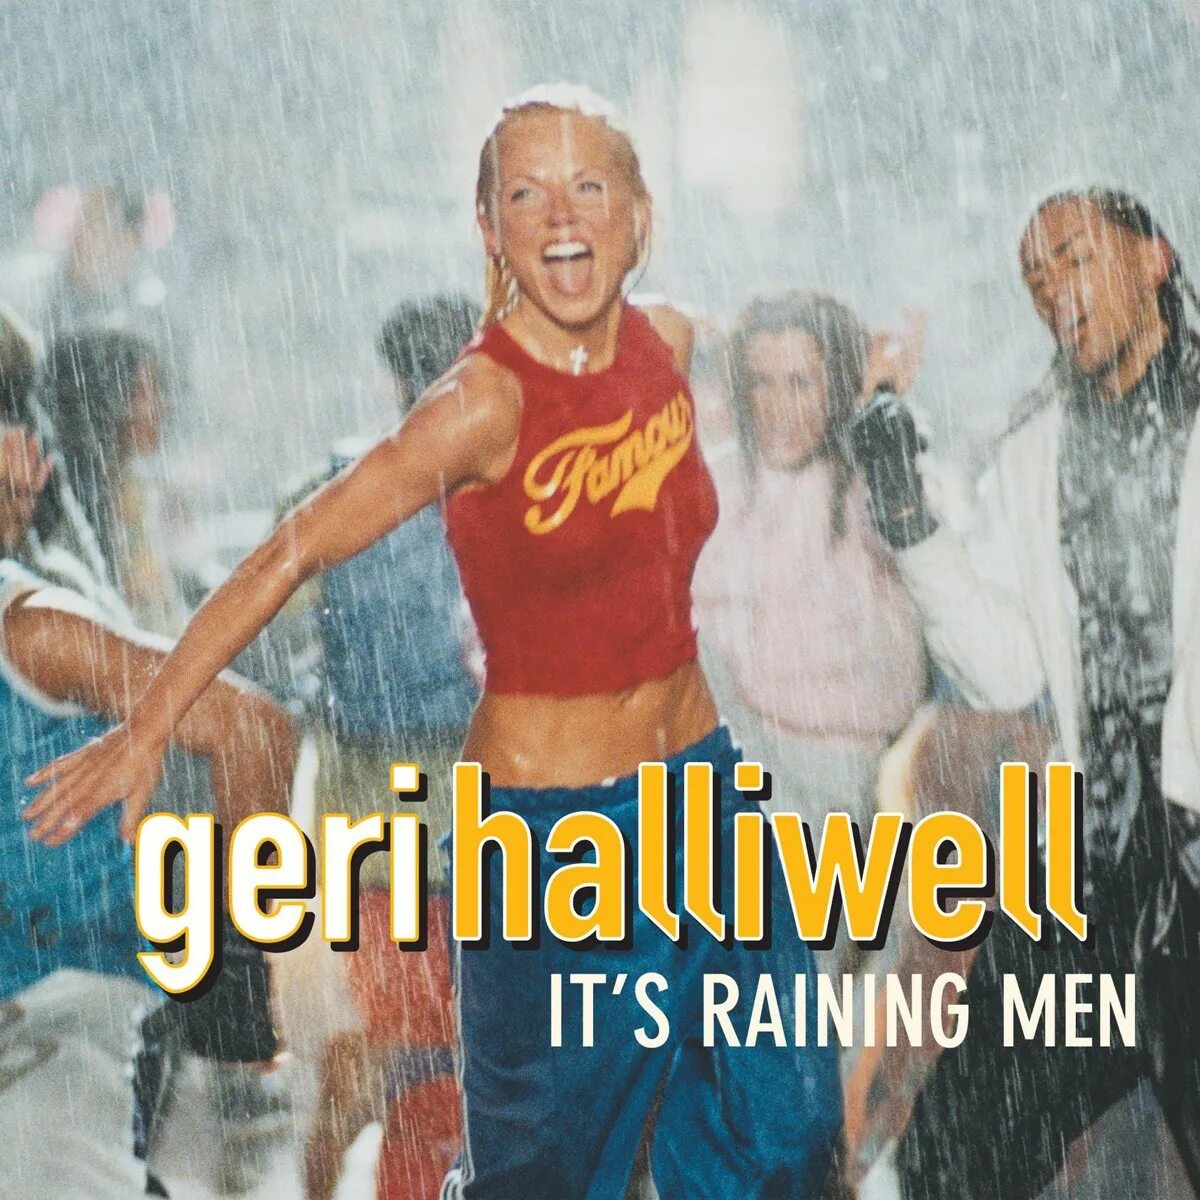 Raining man geri. It’s raining men Джери Холлиуэлл. Geri Halliwell - it`s raining men. Geri Halliwell - it's raining men обложка. Geri Halliwell - it's raining men it's raining men geri Halliwell.